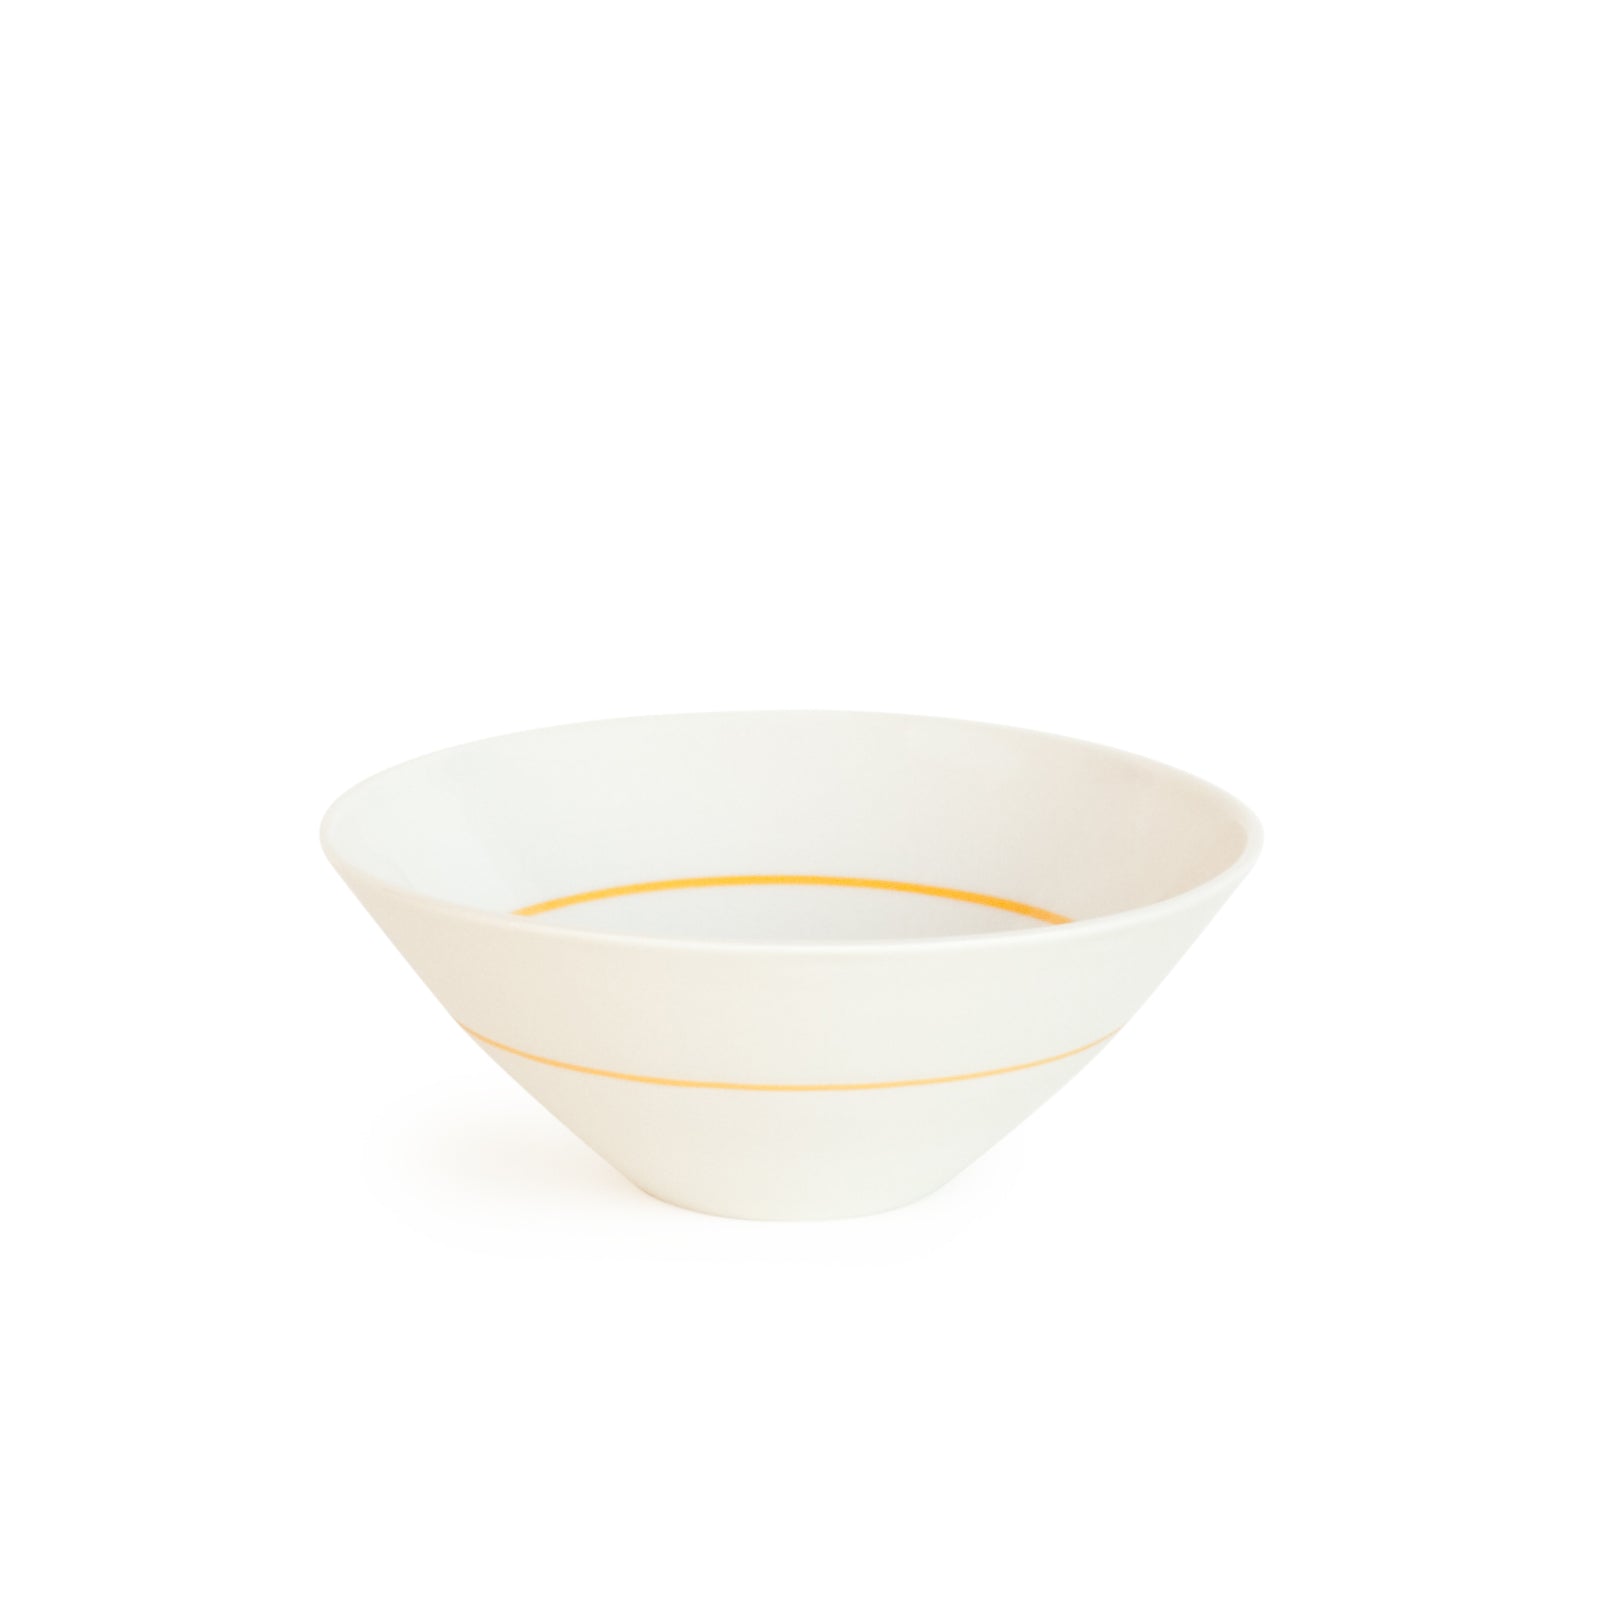 White Porcelain Deep Bowl -  5 Colour Options